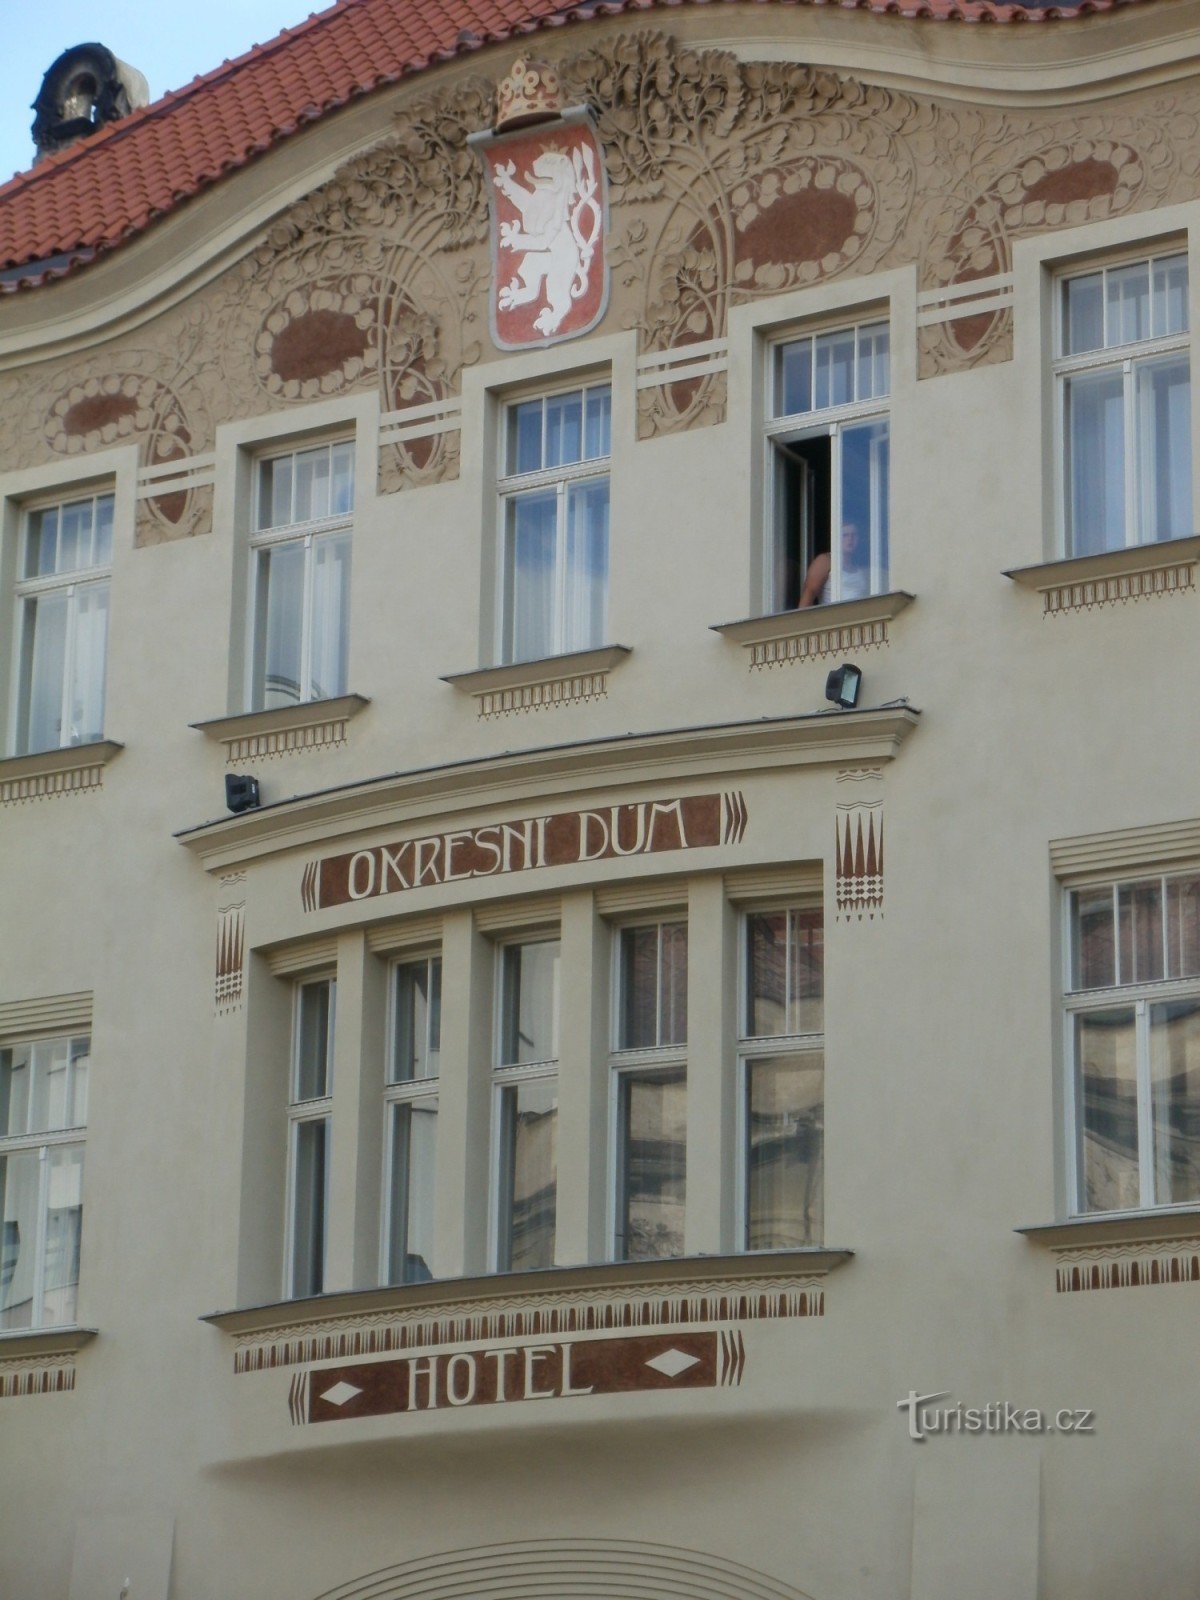 Hradec Králové - Casa Distrettuale